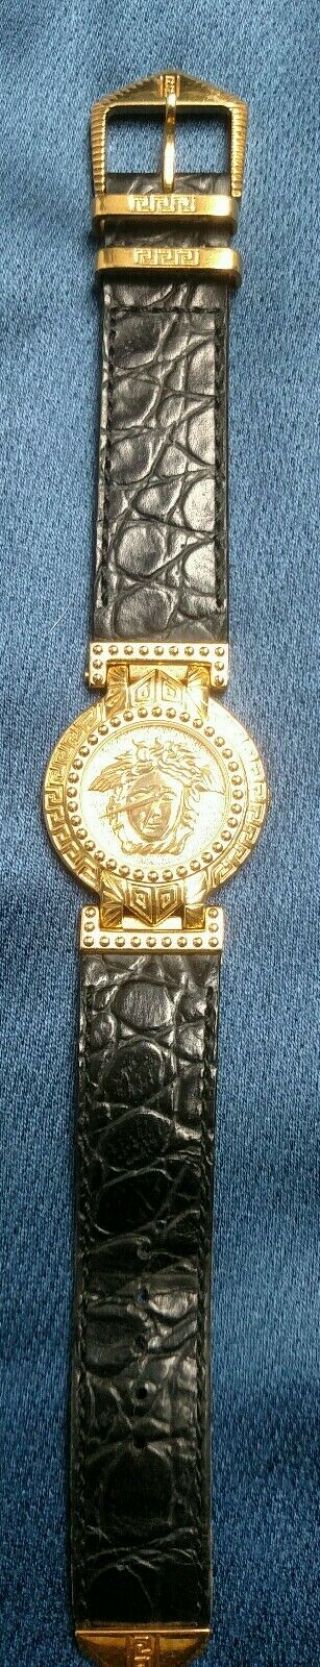 Authentic Gianni Versace Vintage Signature Medusa Gold Plated Quartz Watch